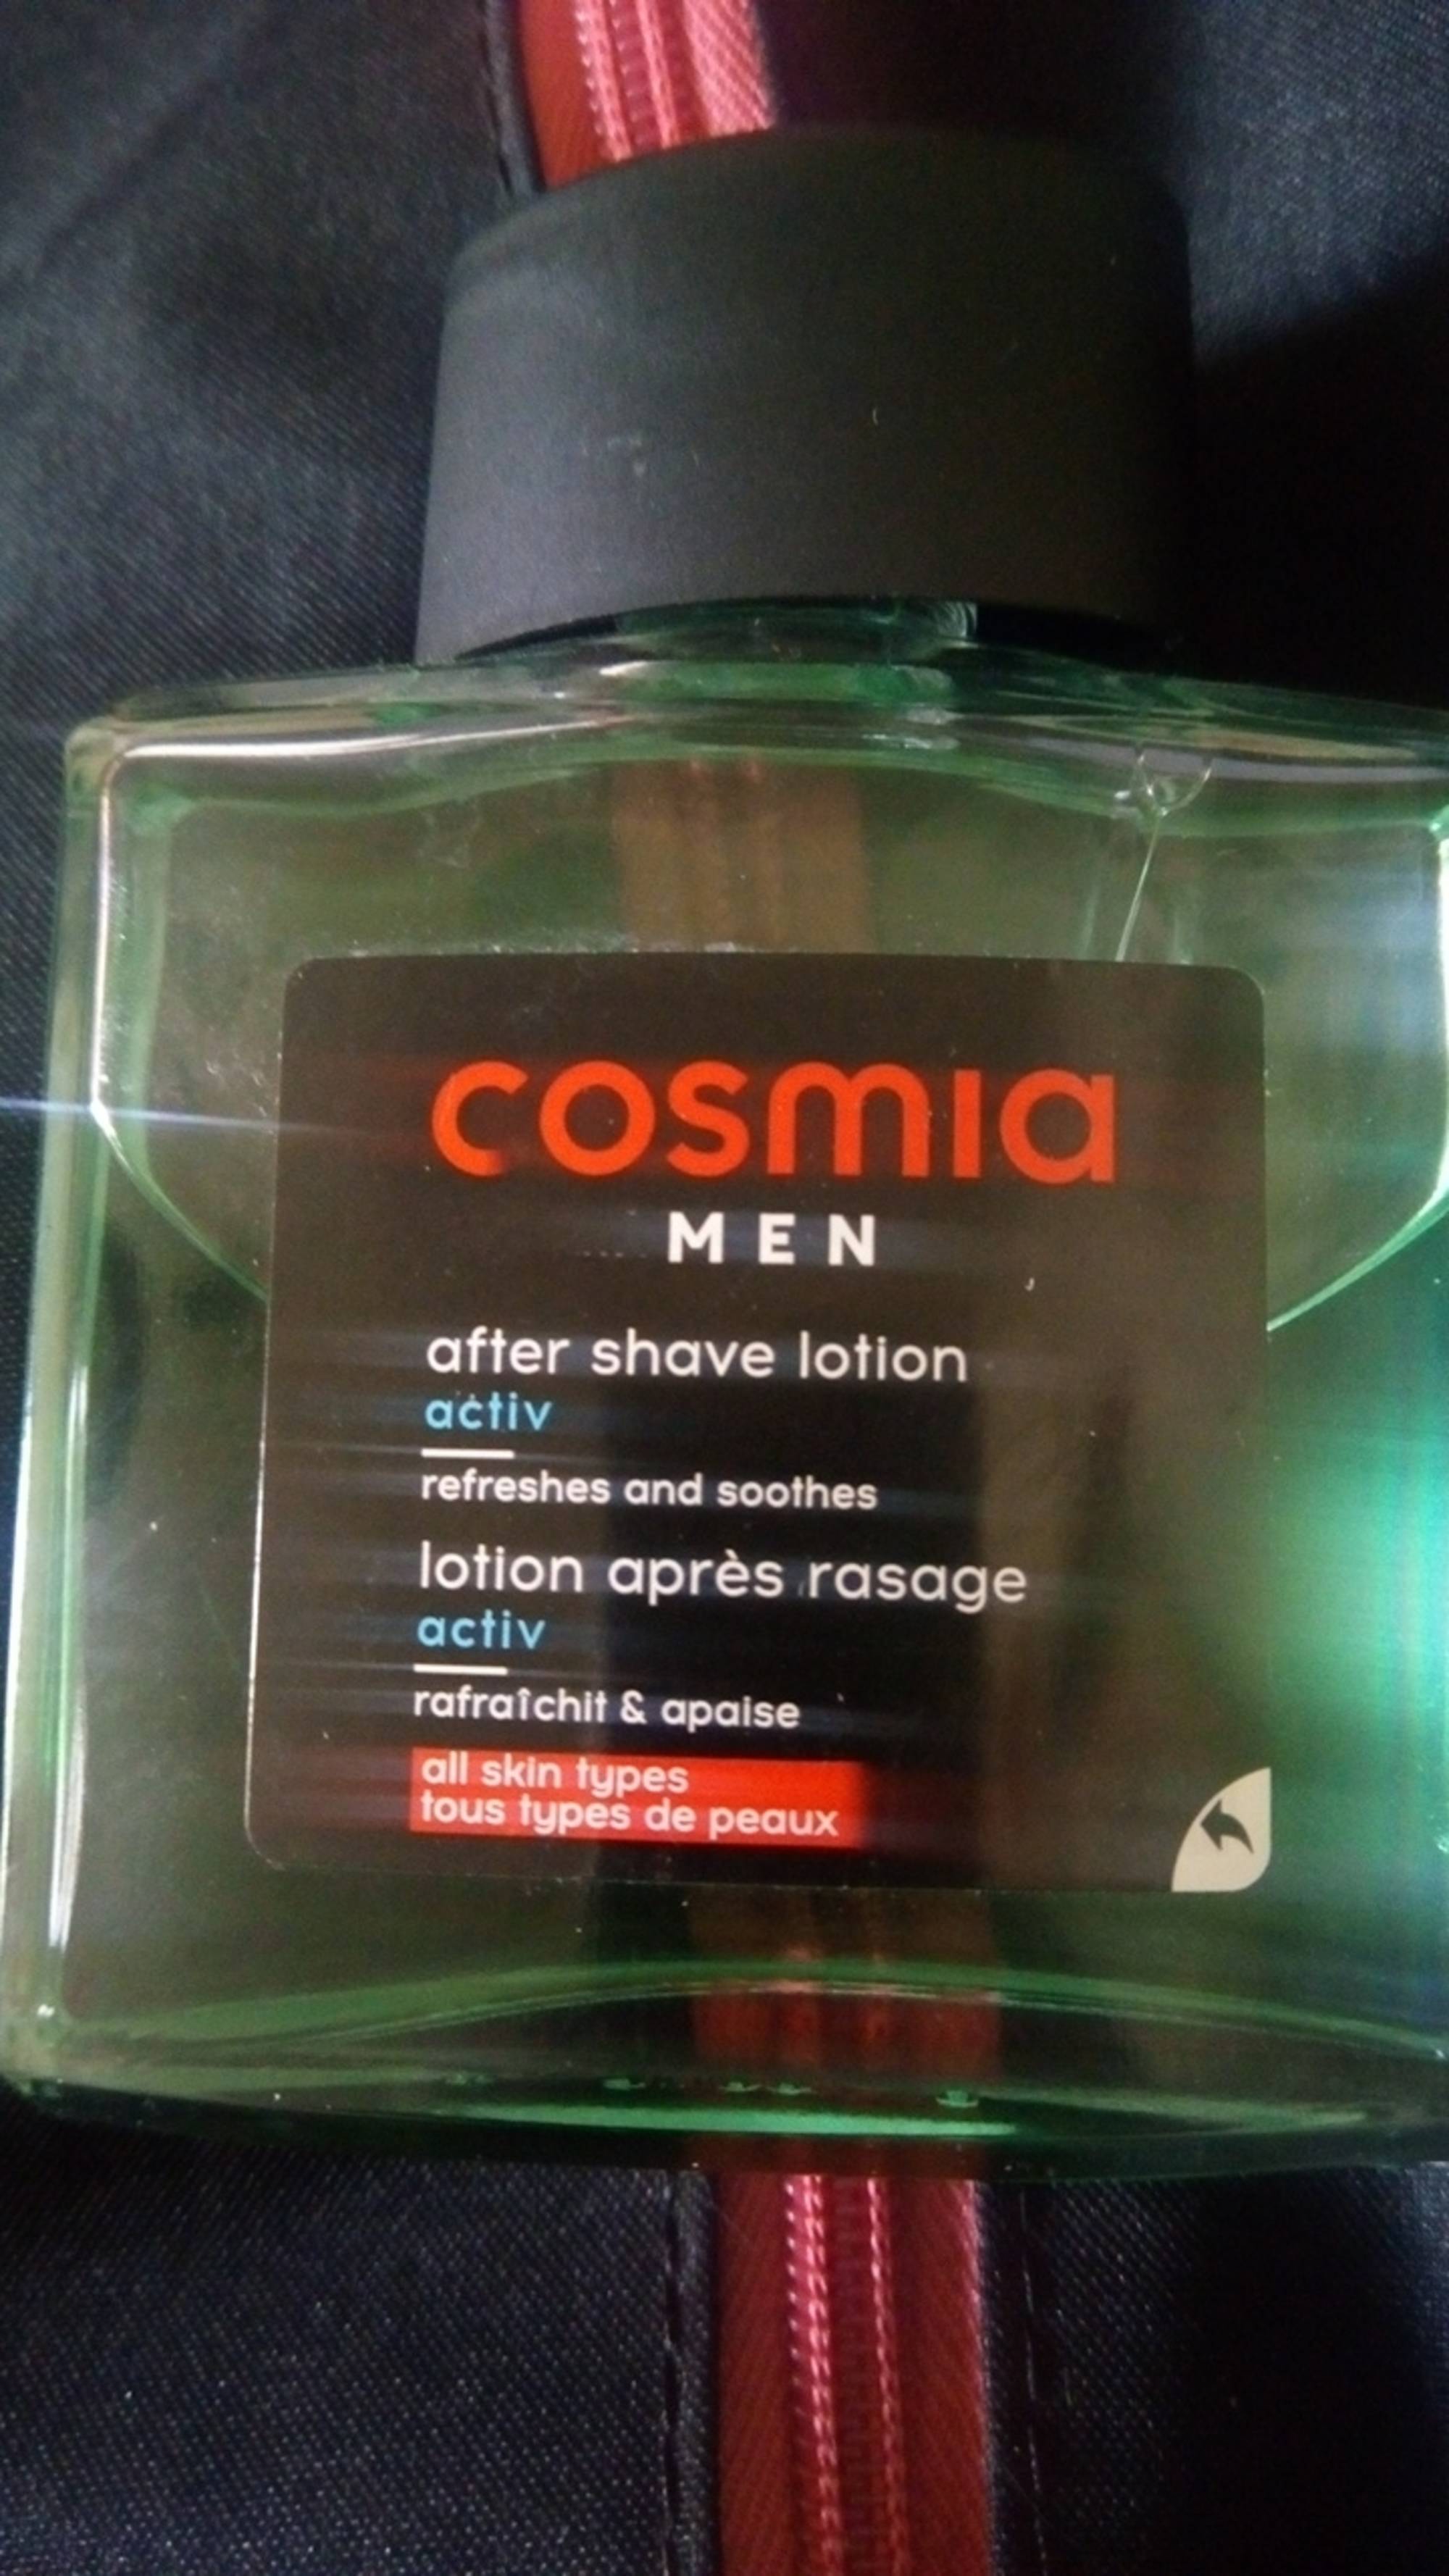 COSMIA - Men - Lotion après rasage activ